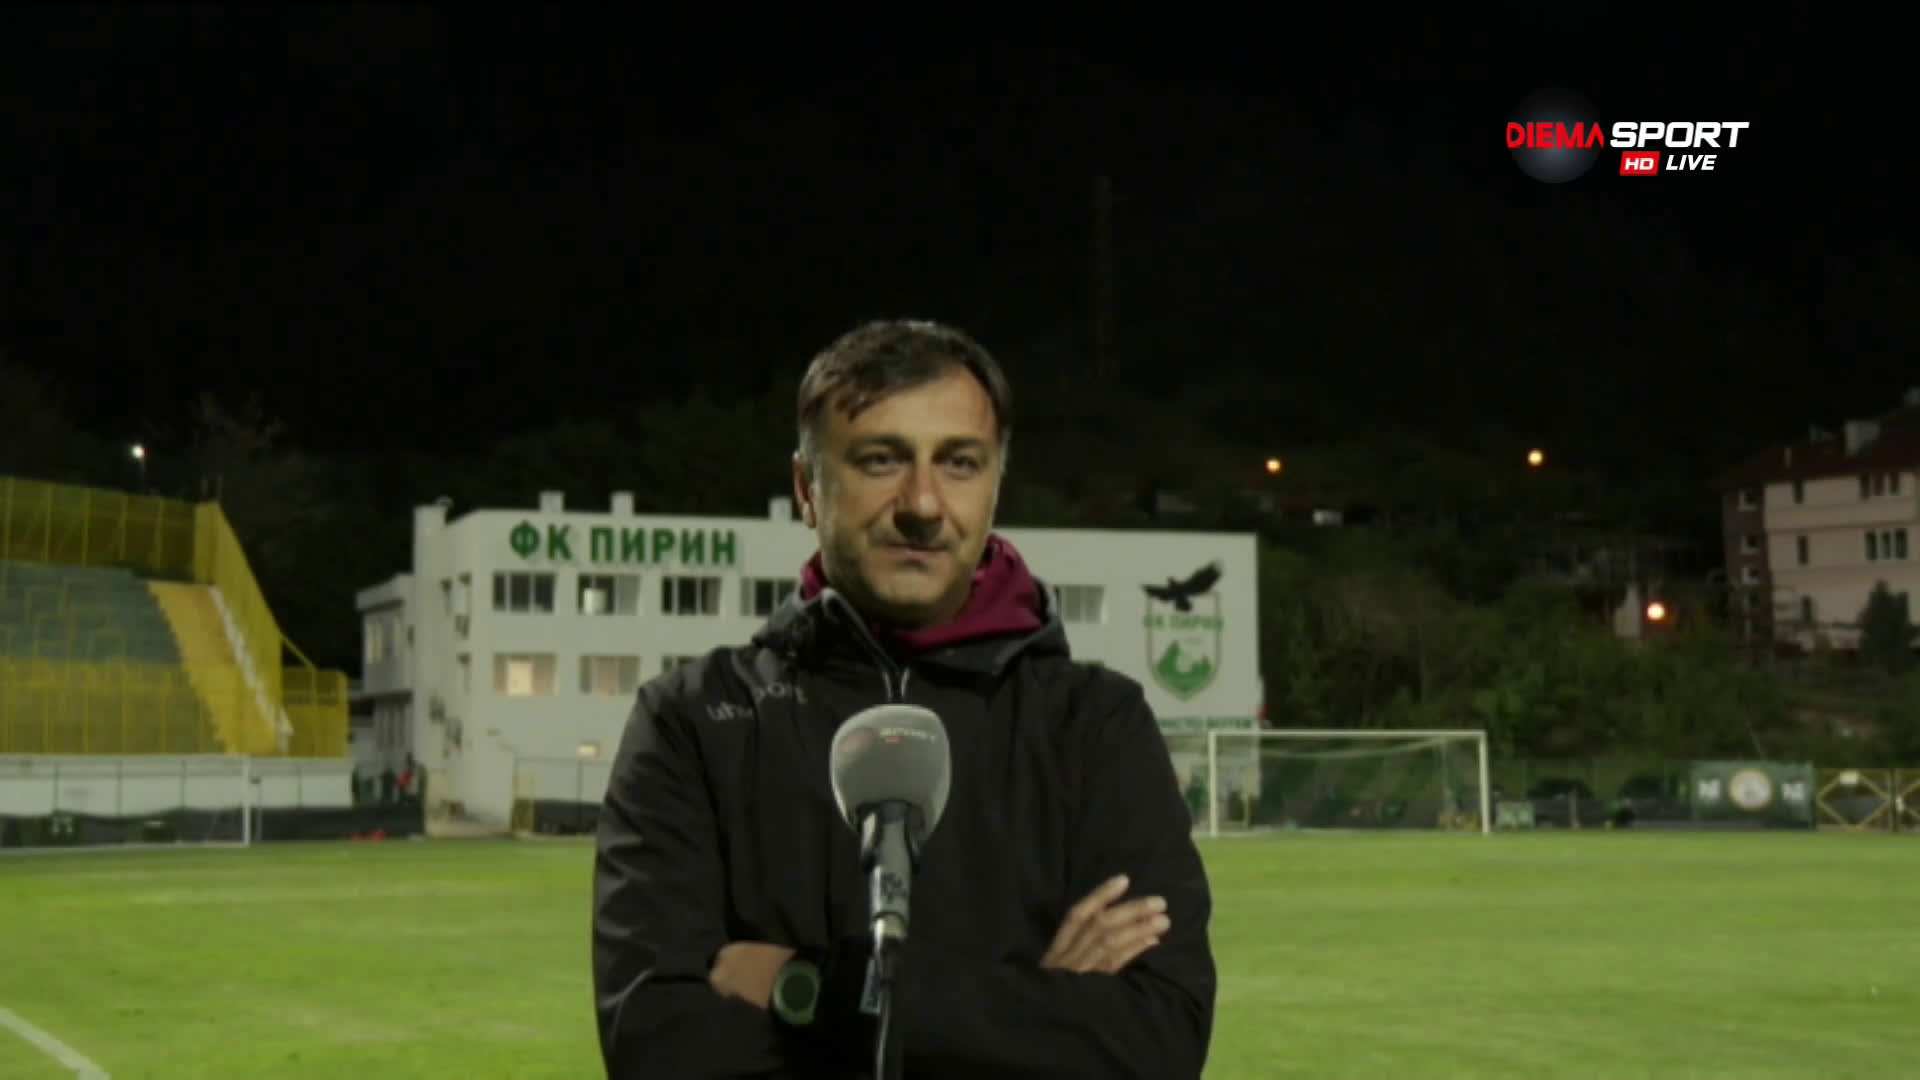 Арангелов: Показахме, че се стремим към бърз и динамичен футбол